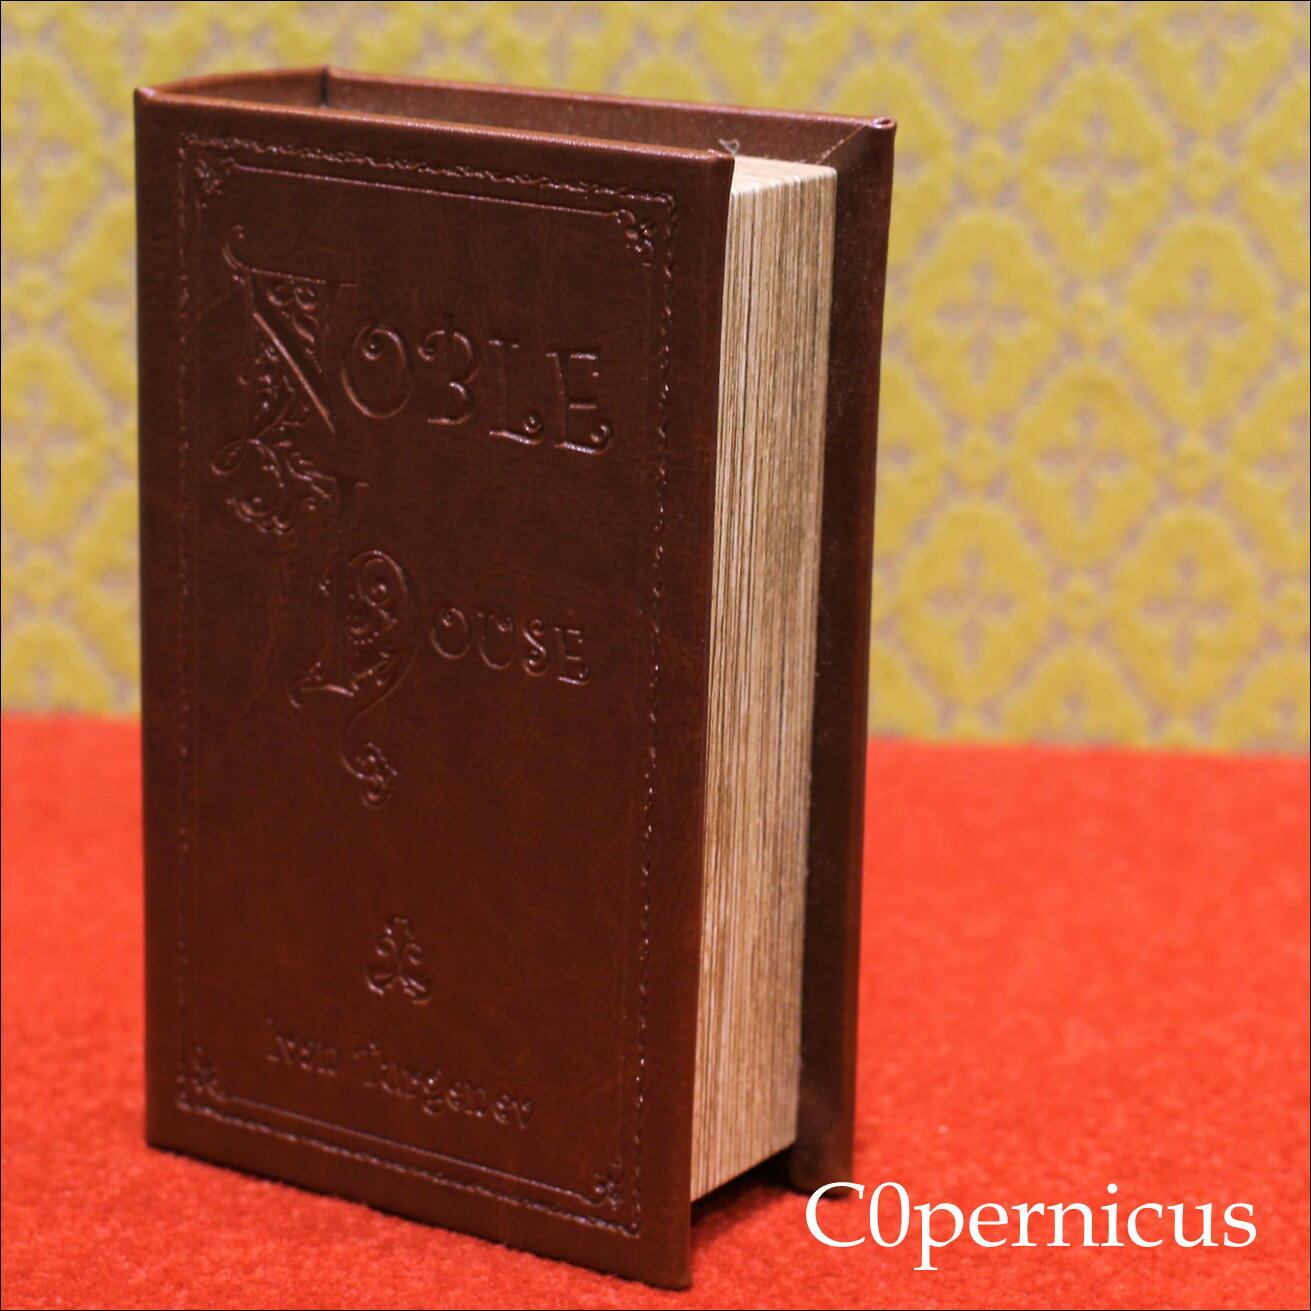 Bookボックス5/シークレットボックス/アンティーク雑貨/浜松雑貨屋C0pernicus